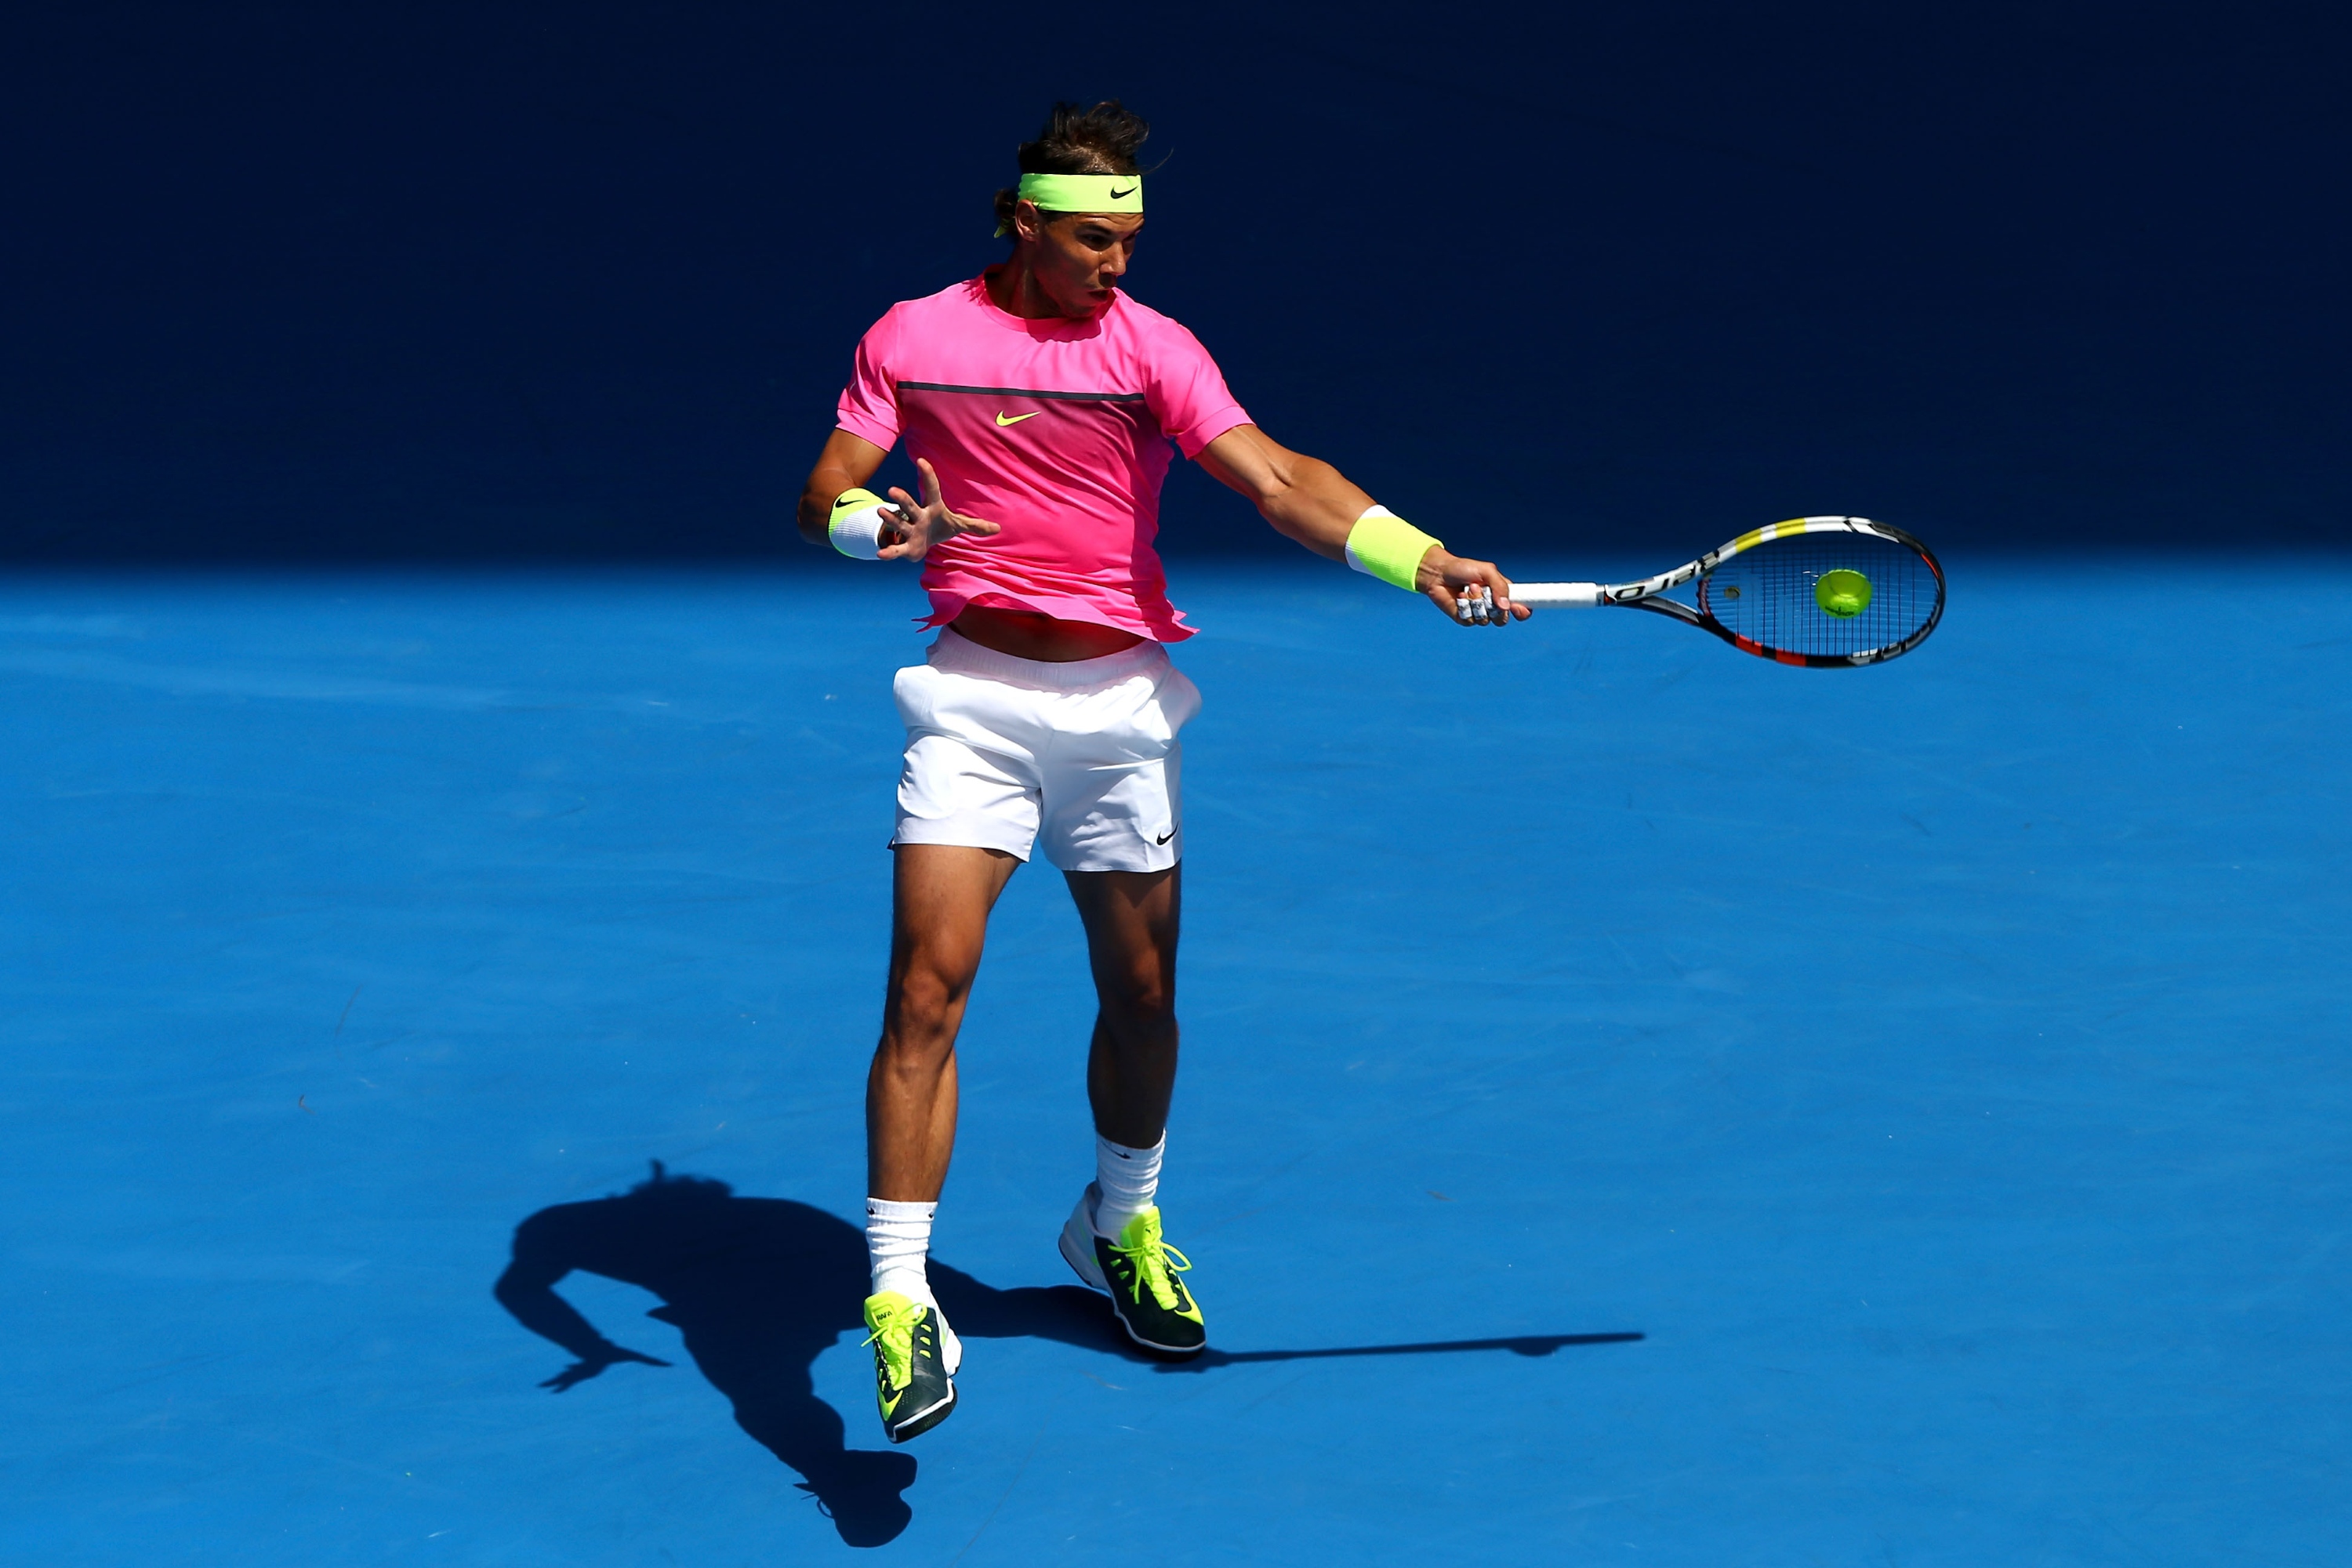 Rafael Nadal vs Mikhail Youzhny Open de Australia 2015 Pict. 14